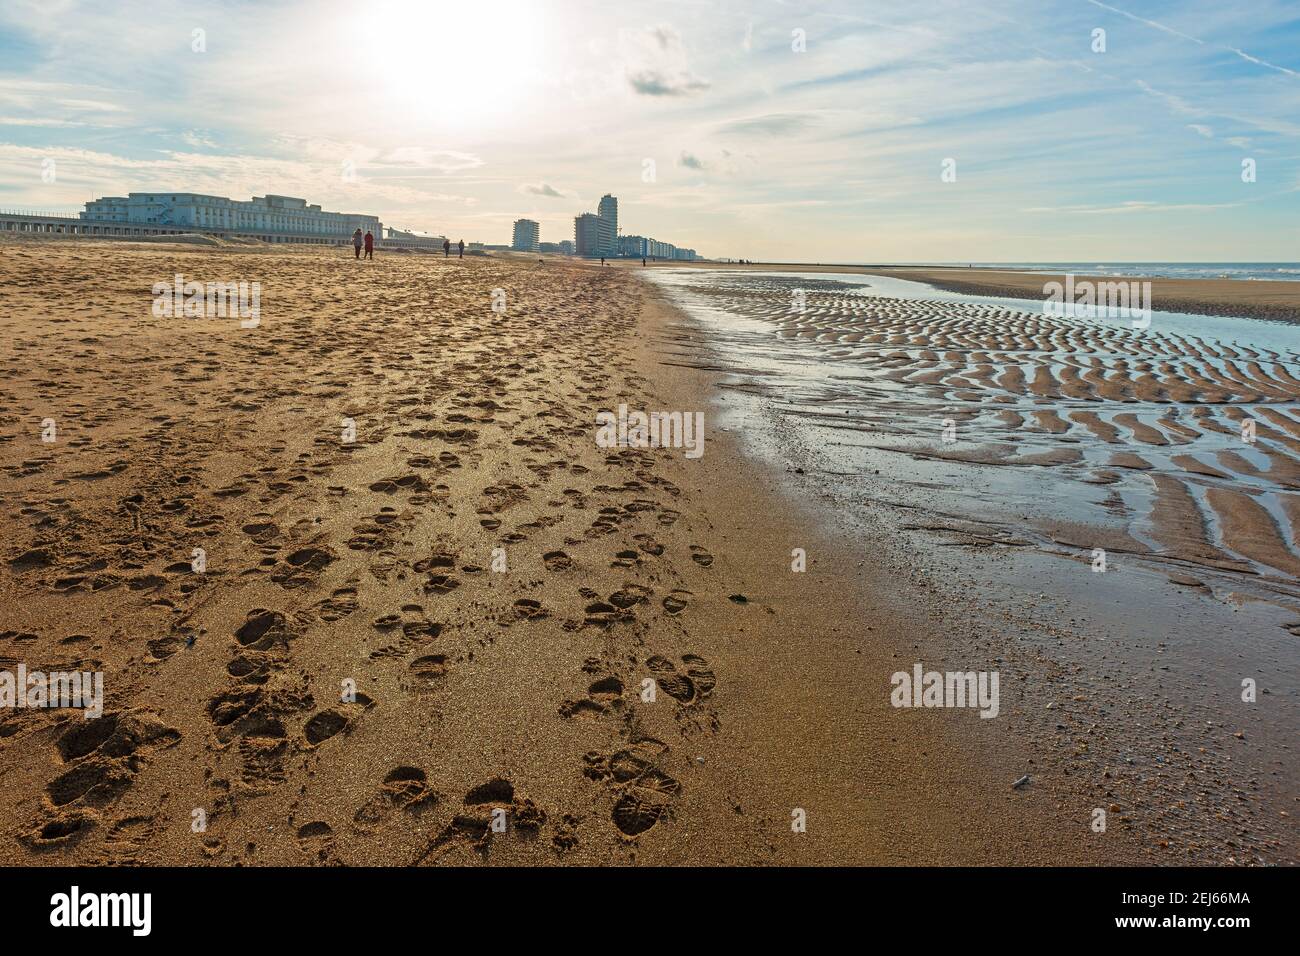 Sentiers pédestres et pistes de personnes sur la plage d'Ostende (Ostende), Belgique. Banque D'Images